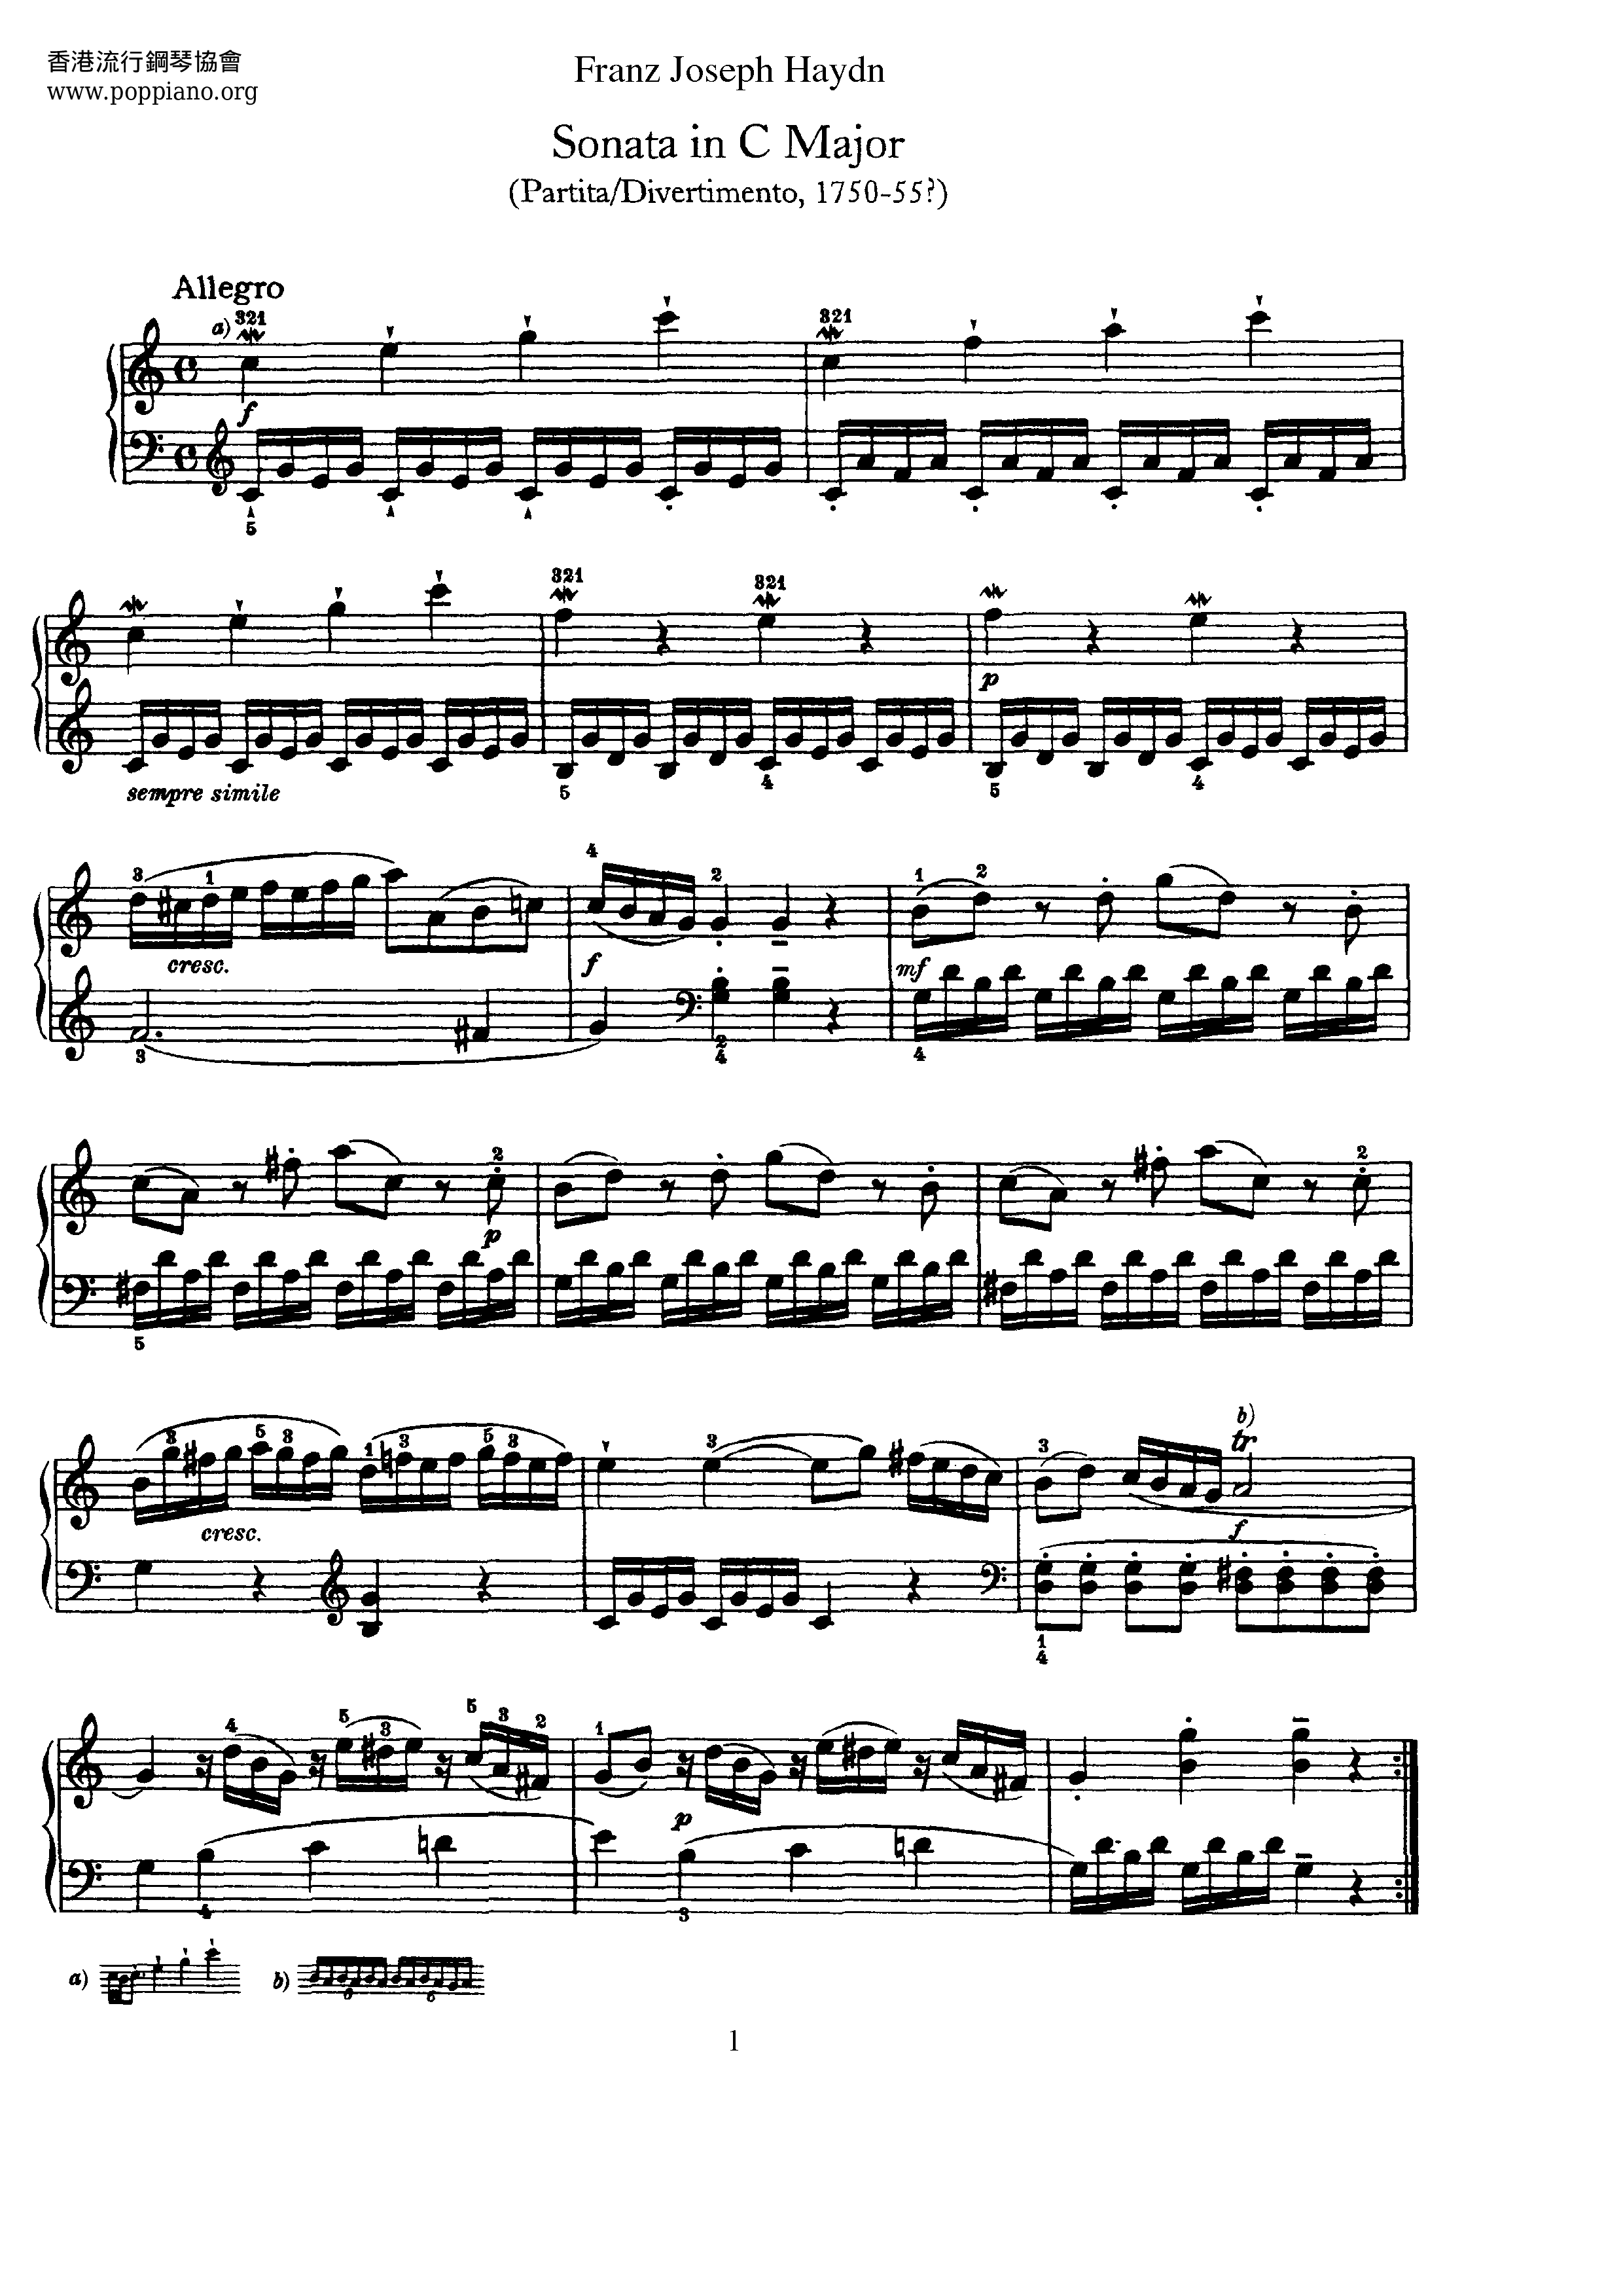 Piano Sonata In C Major, Hob. XVI:1 Score